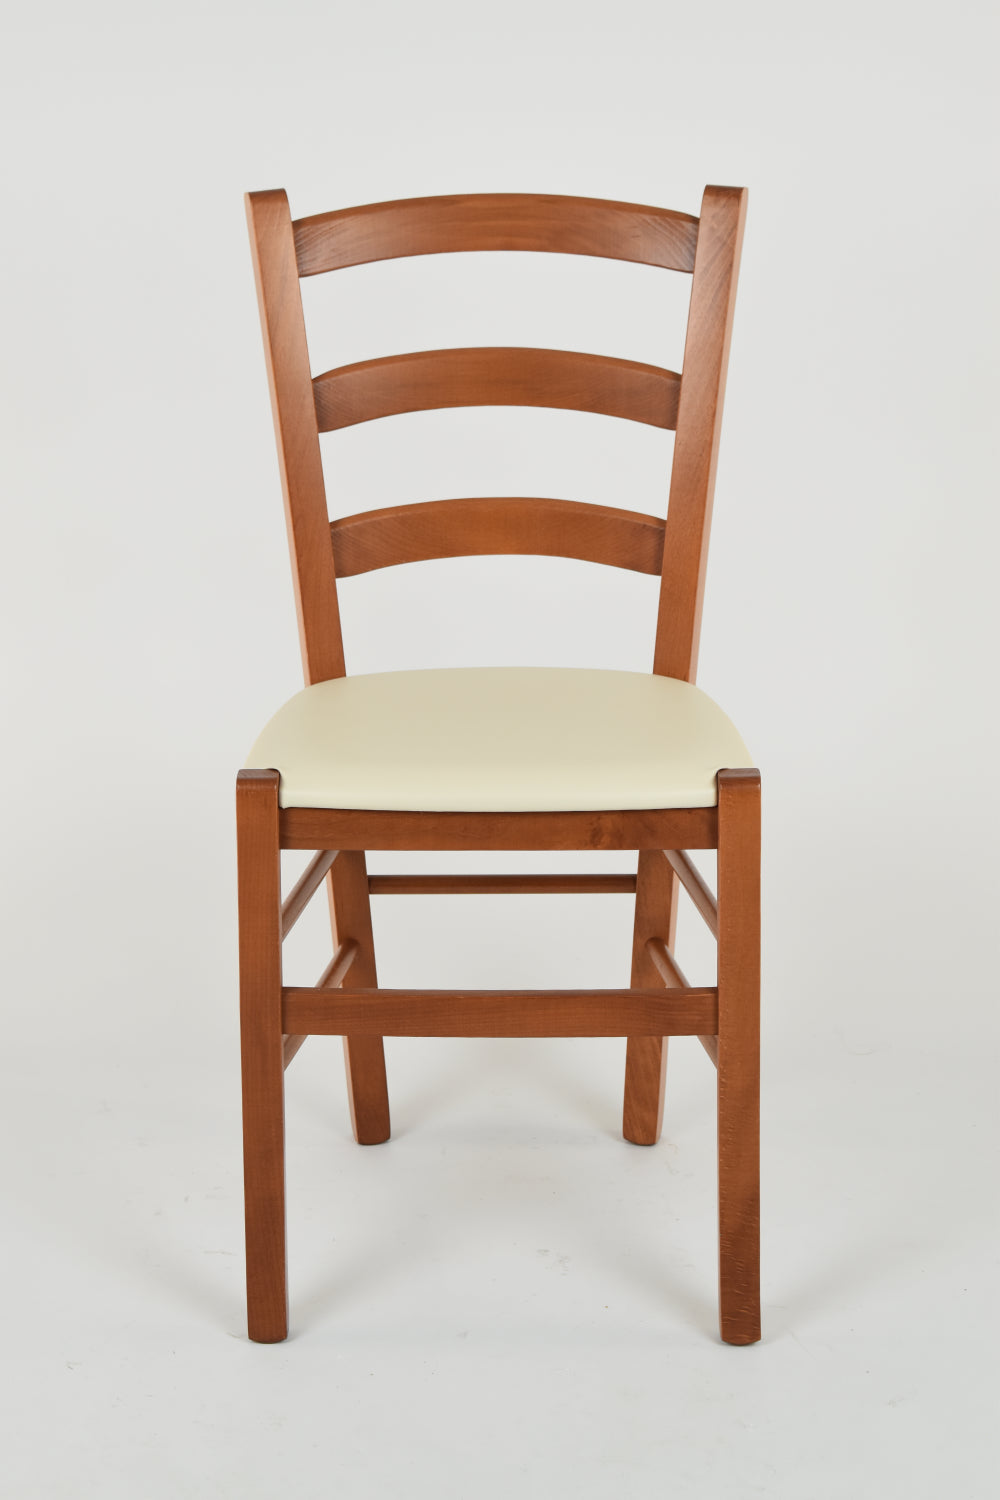 Tommychairs - Set 2 sillas de Cocina y Comedor Venice, Estructura en Madera de Haya Color Cerezo y Asiento tapizado en Polipiel Color Marfil